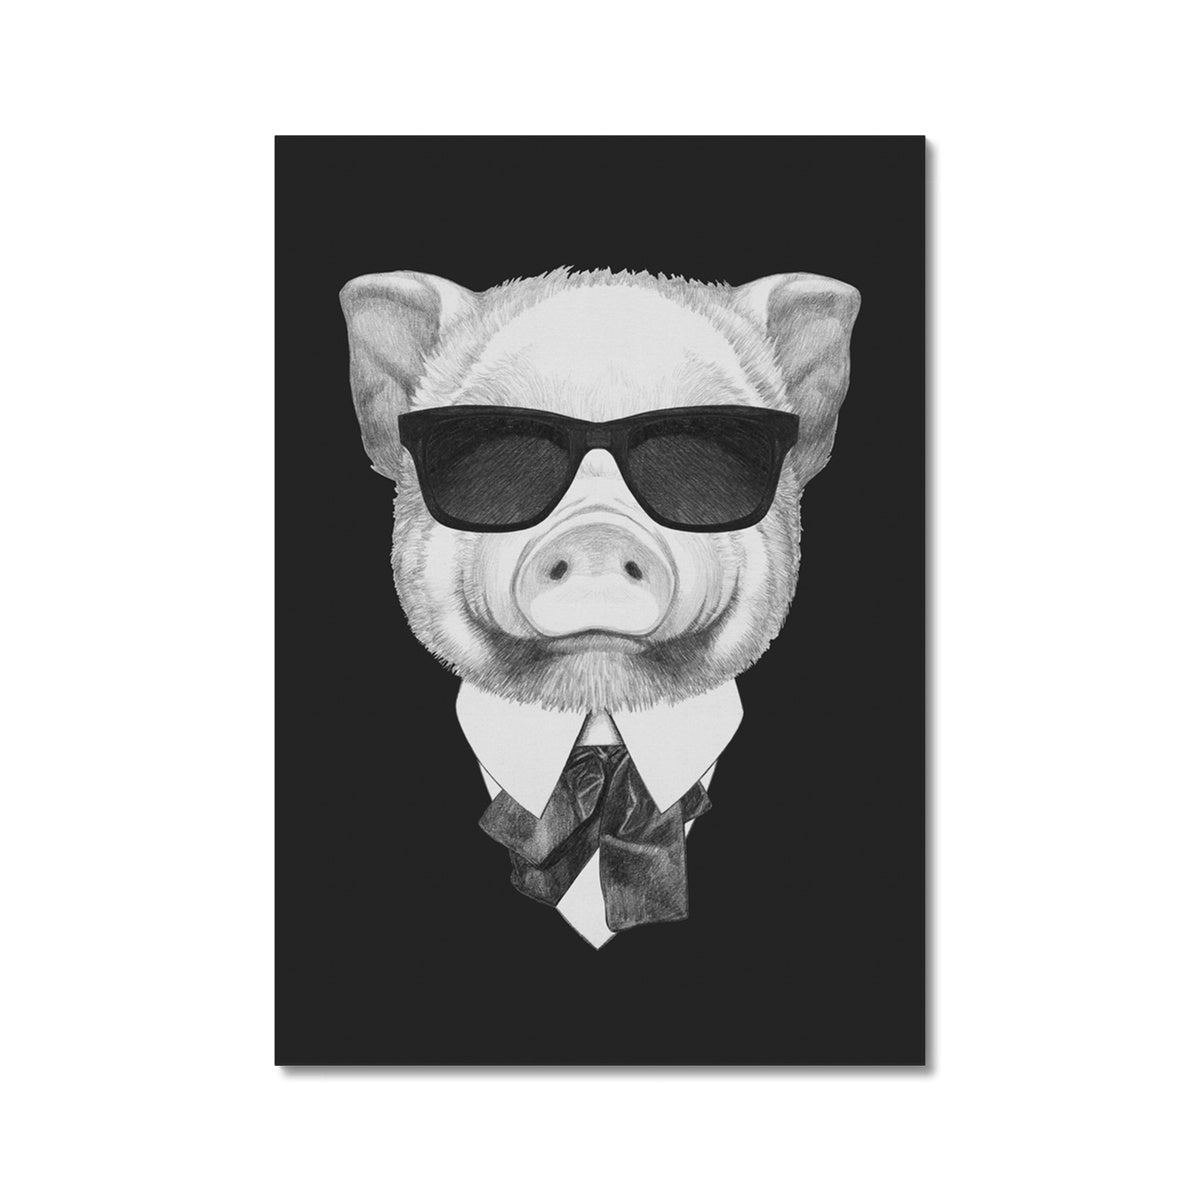 Monochrome Pig With Glasses Portrait Canvas